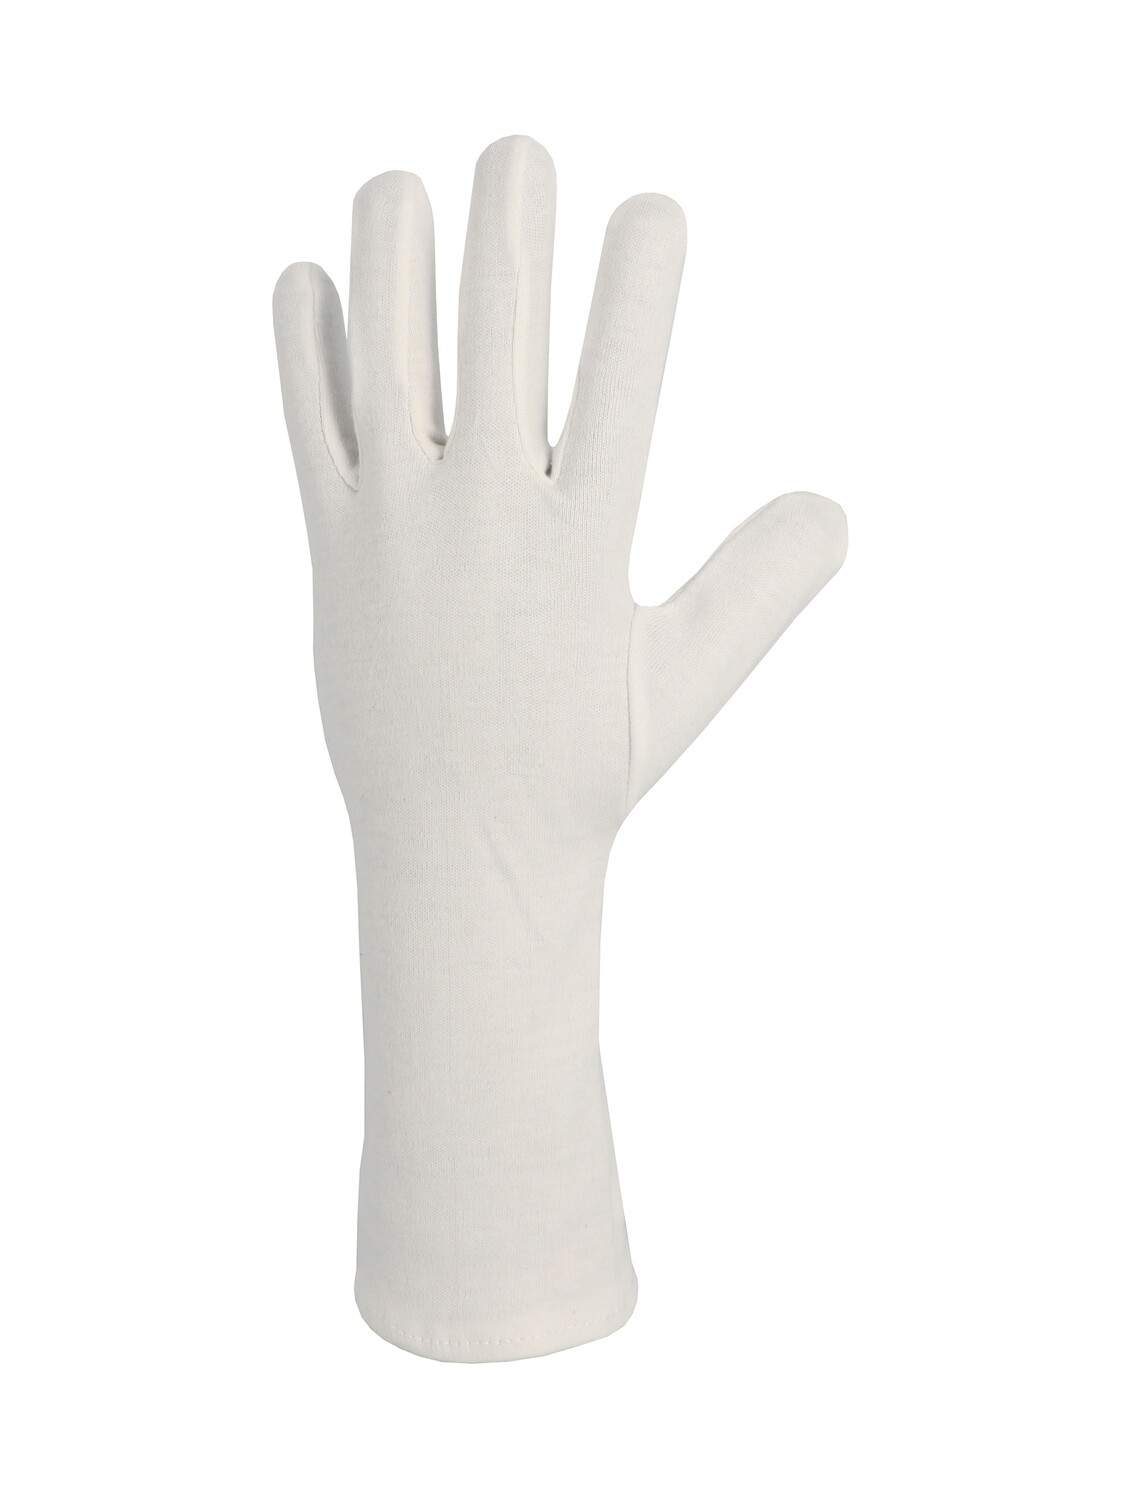 Gant coton Interlock blanchi avec ourlet. Longueur 35 cm. (10 paires)